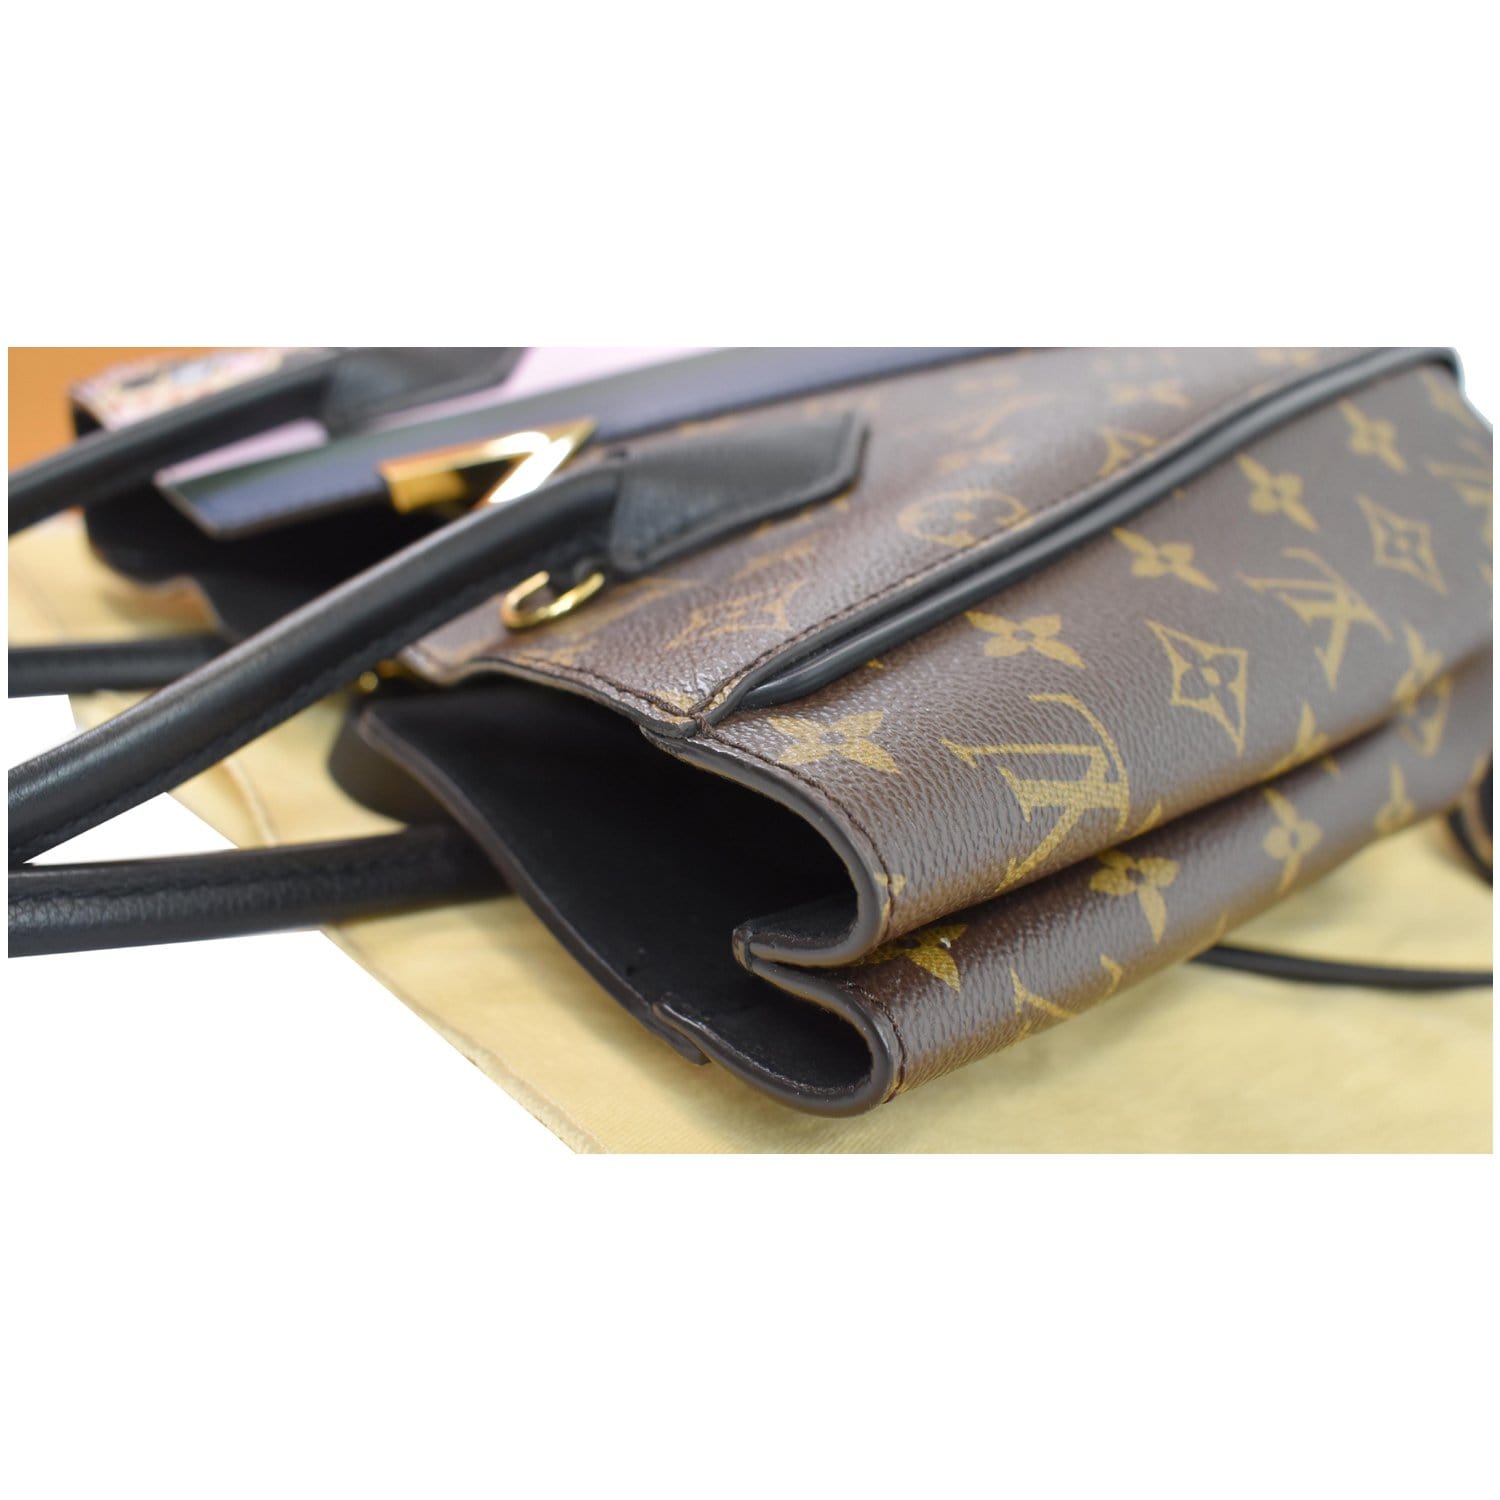 Louis Vuitton Monogram Black Kimono Wallet